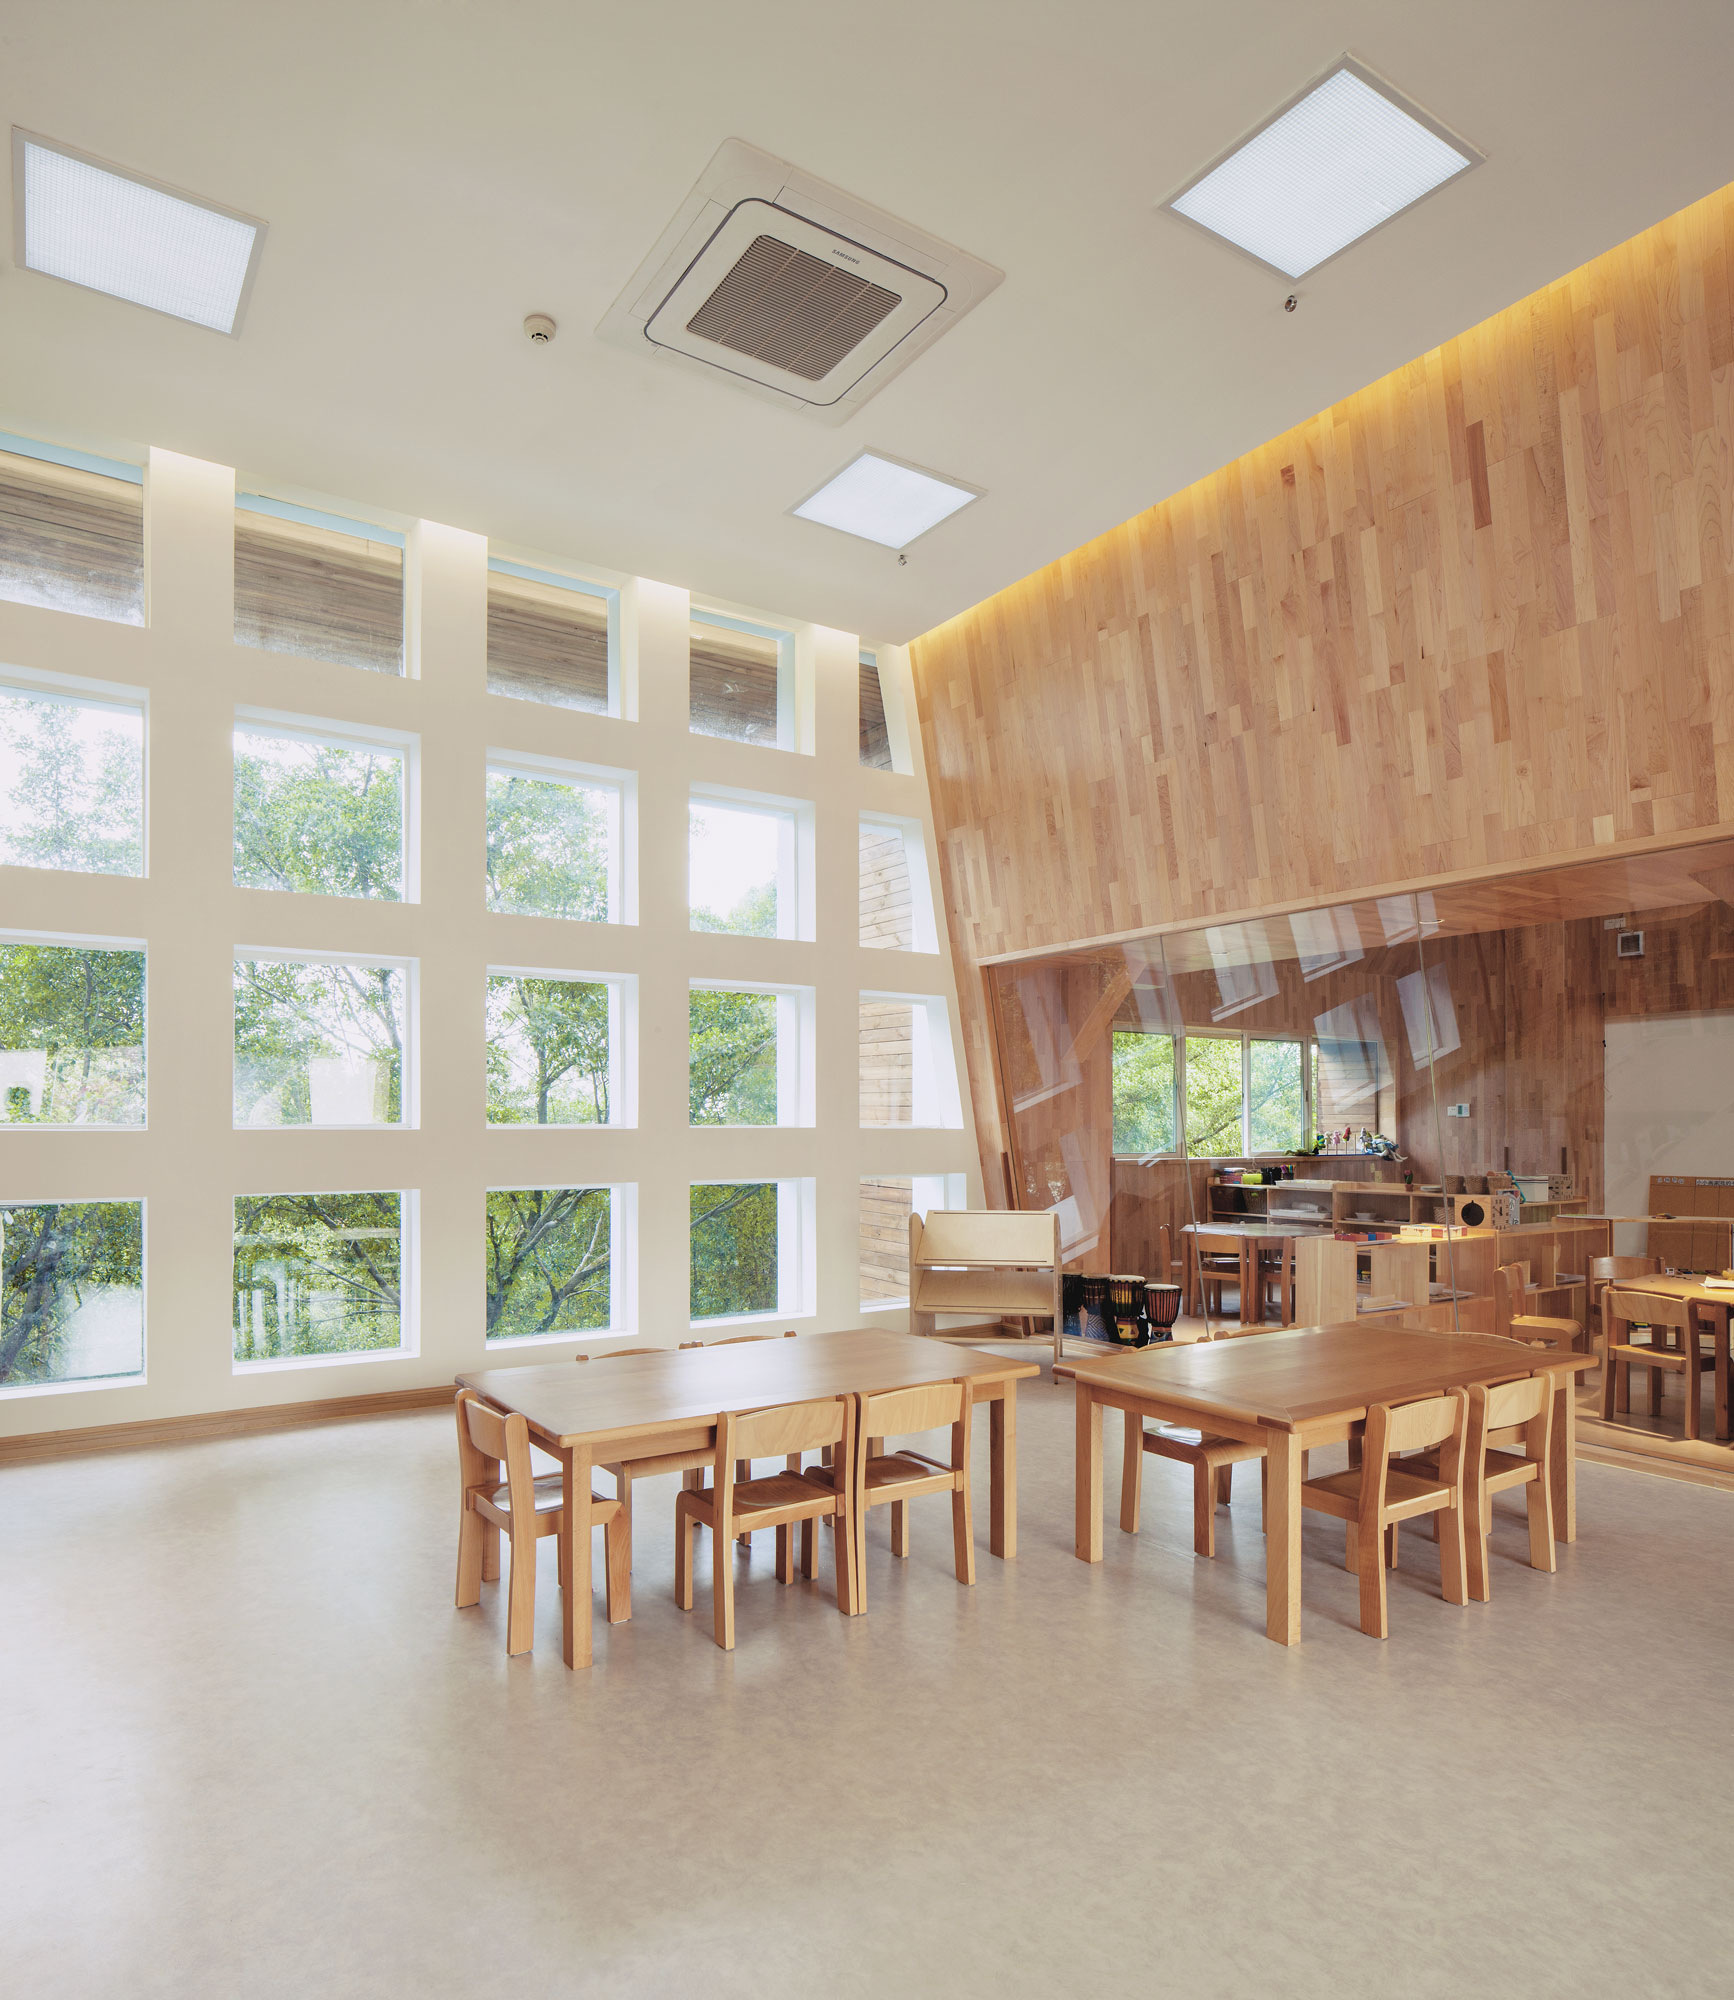 图片[11]|IBOBI国际幼儿园福田校区|ART-Arrakis | 建筑室内设计的创新与灵感